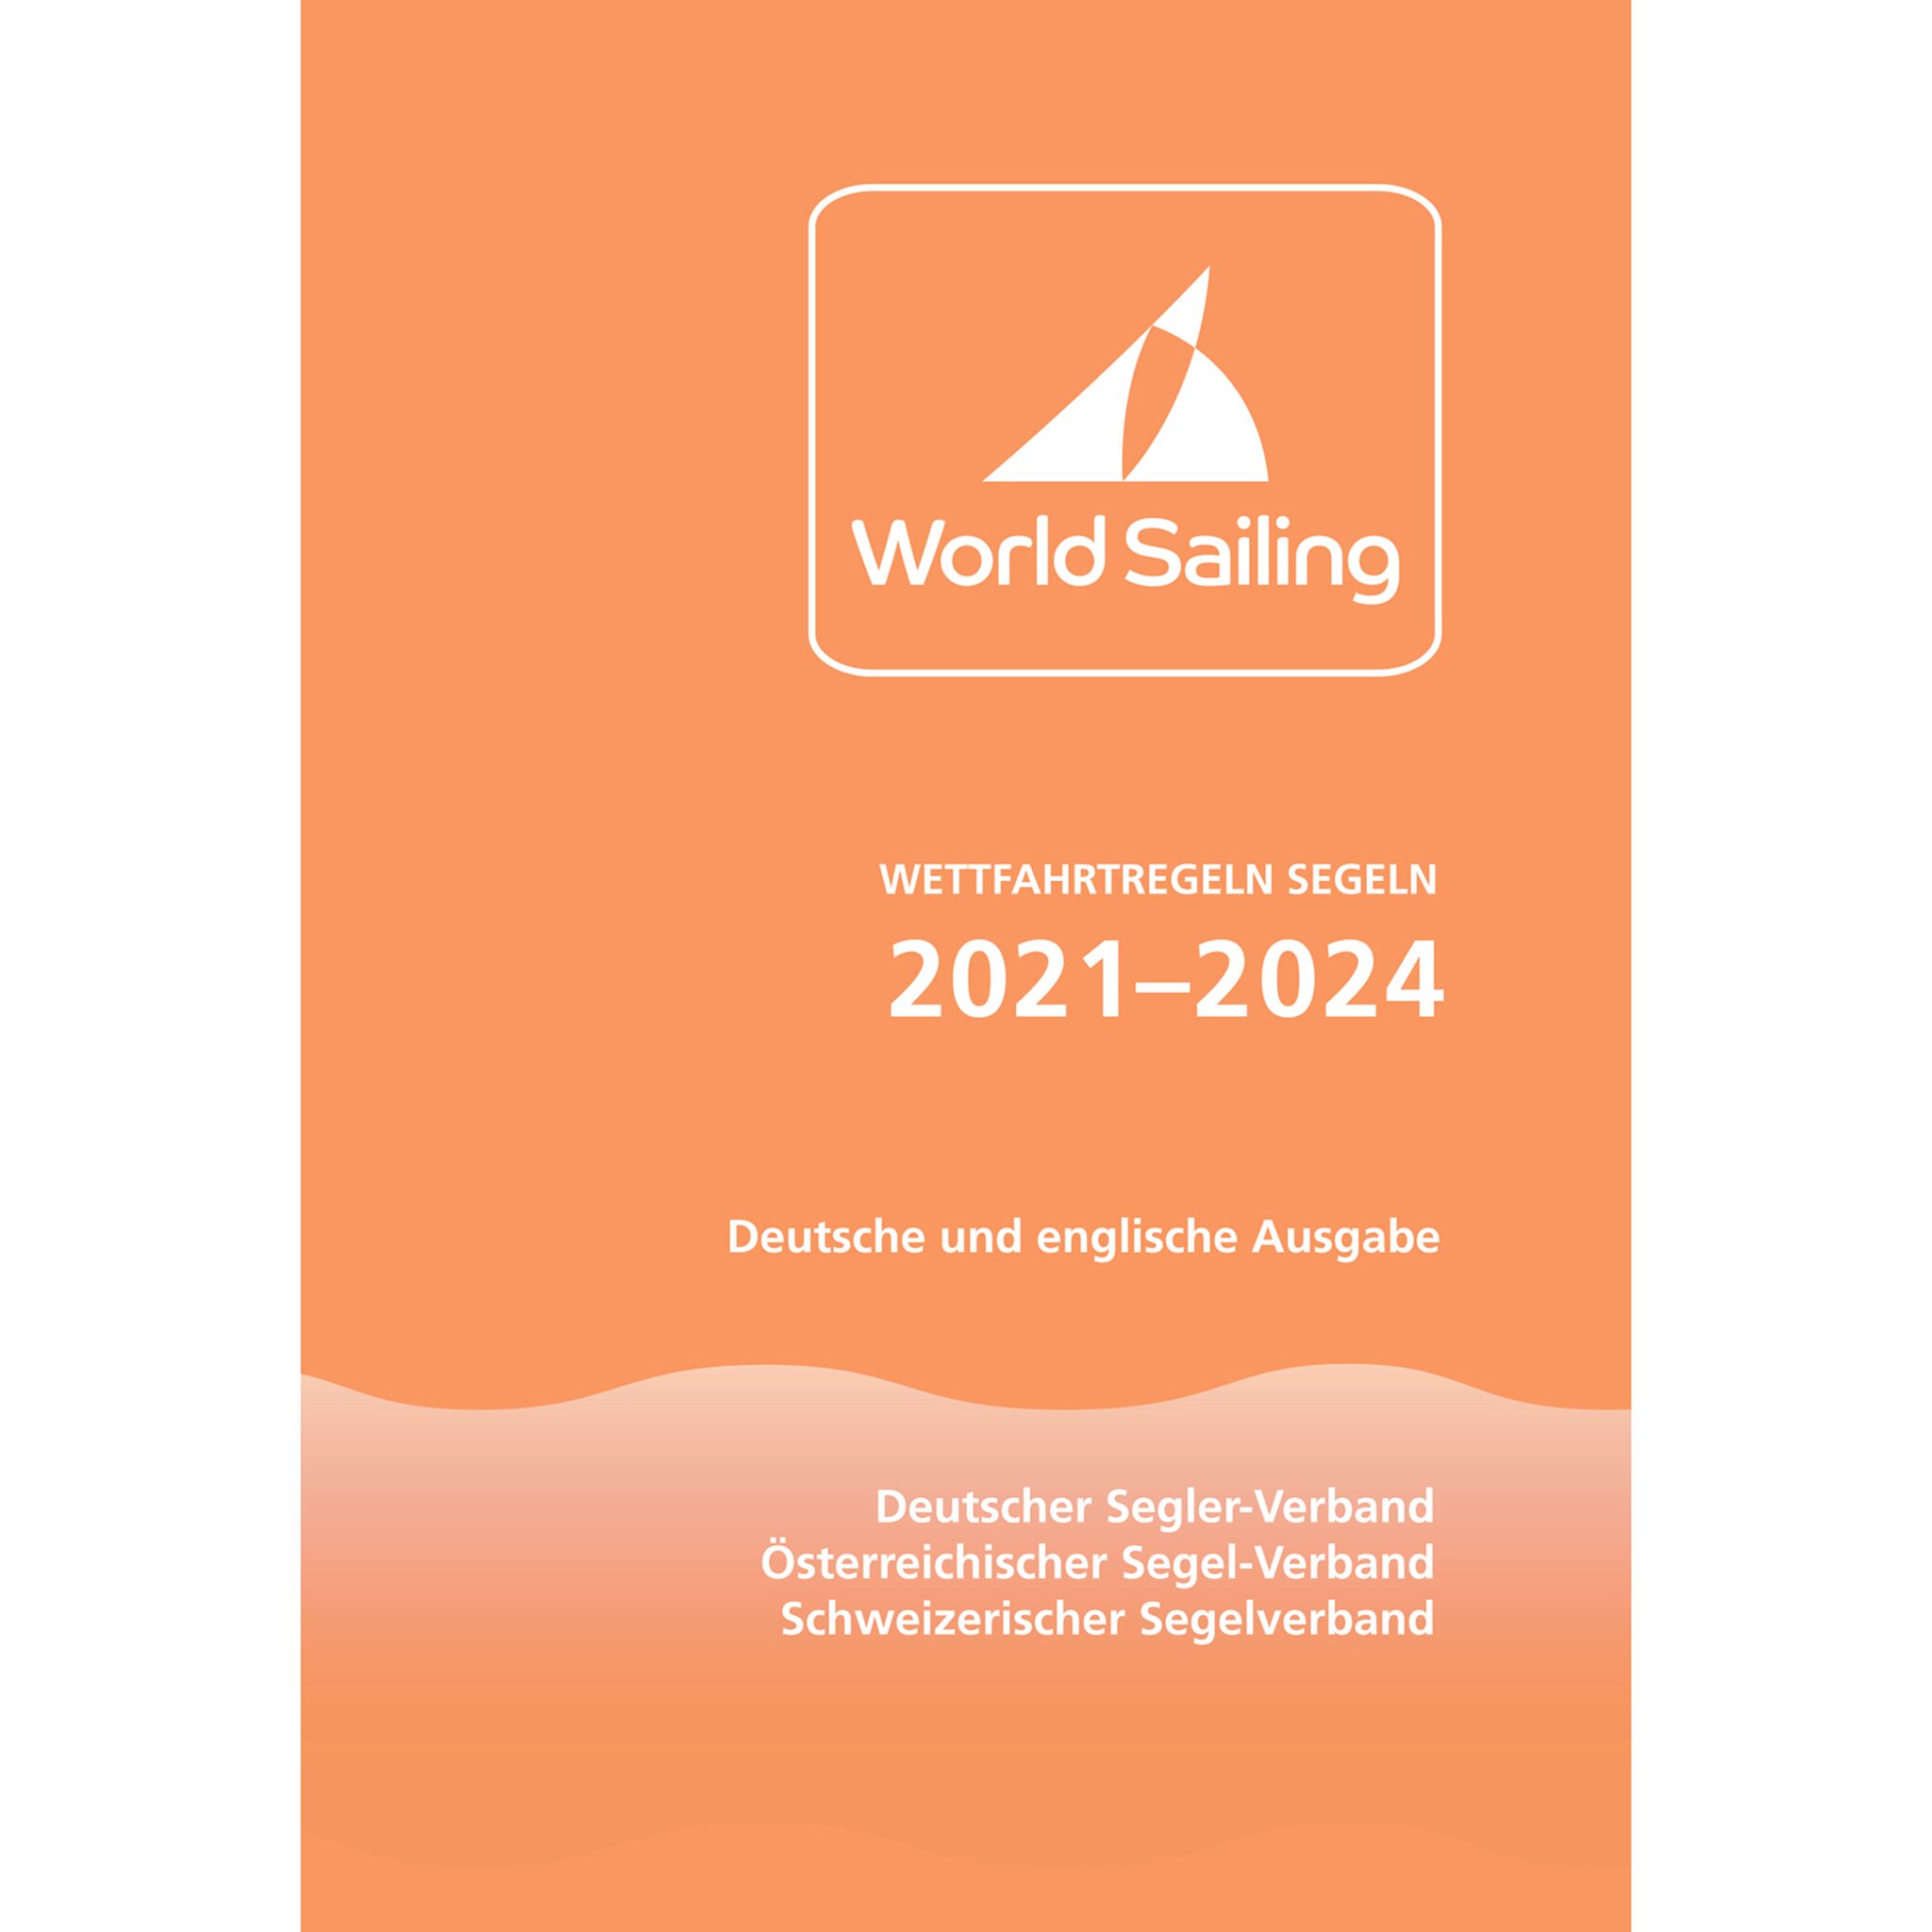 Delius Klasing Wettfahrtregeln Segeln 2021 bis 2024